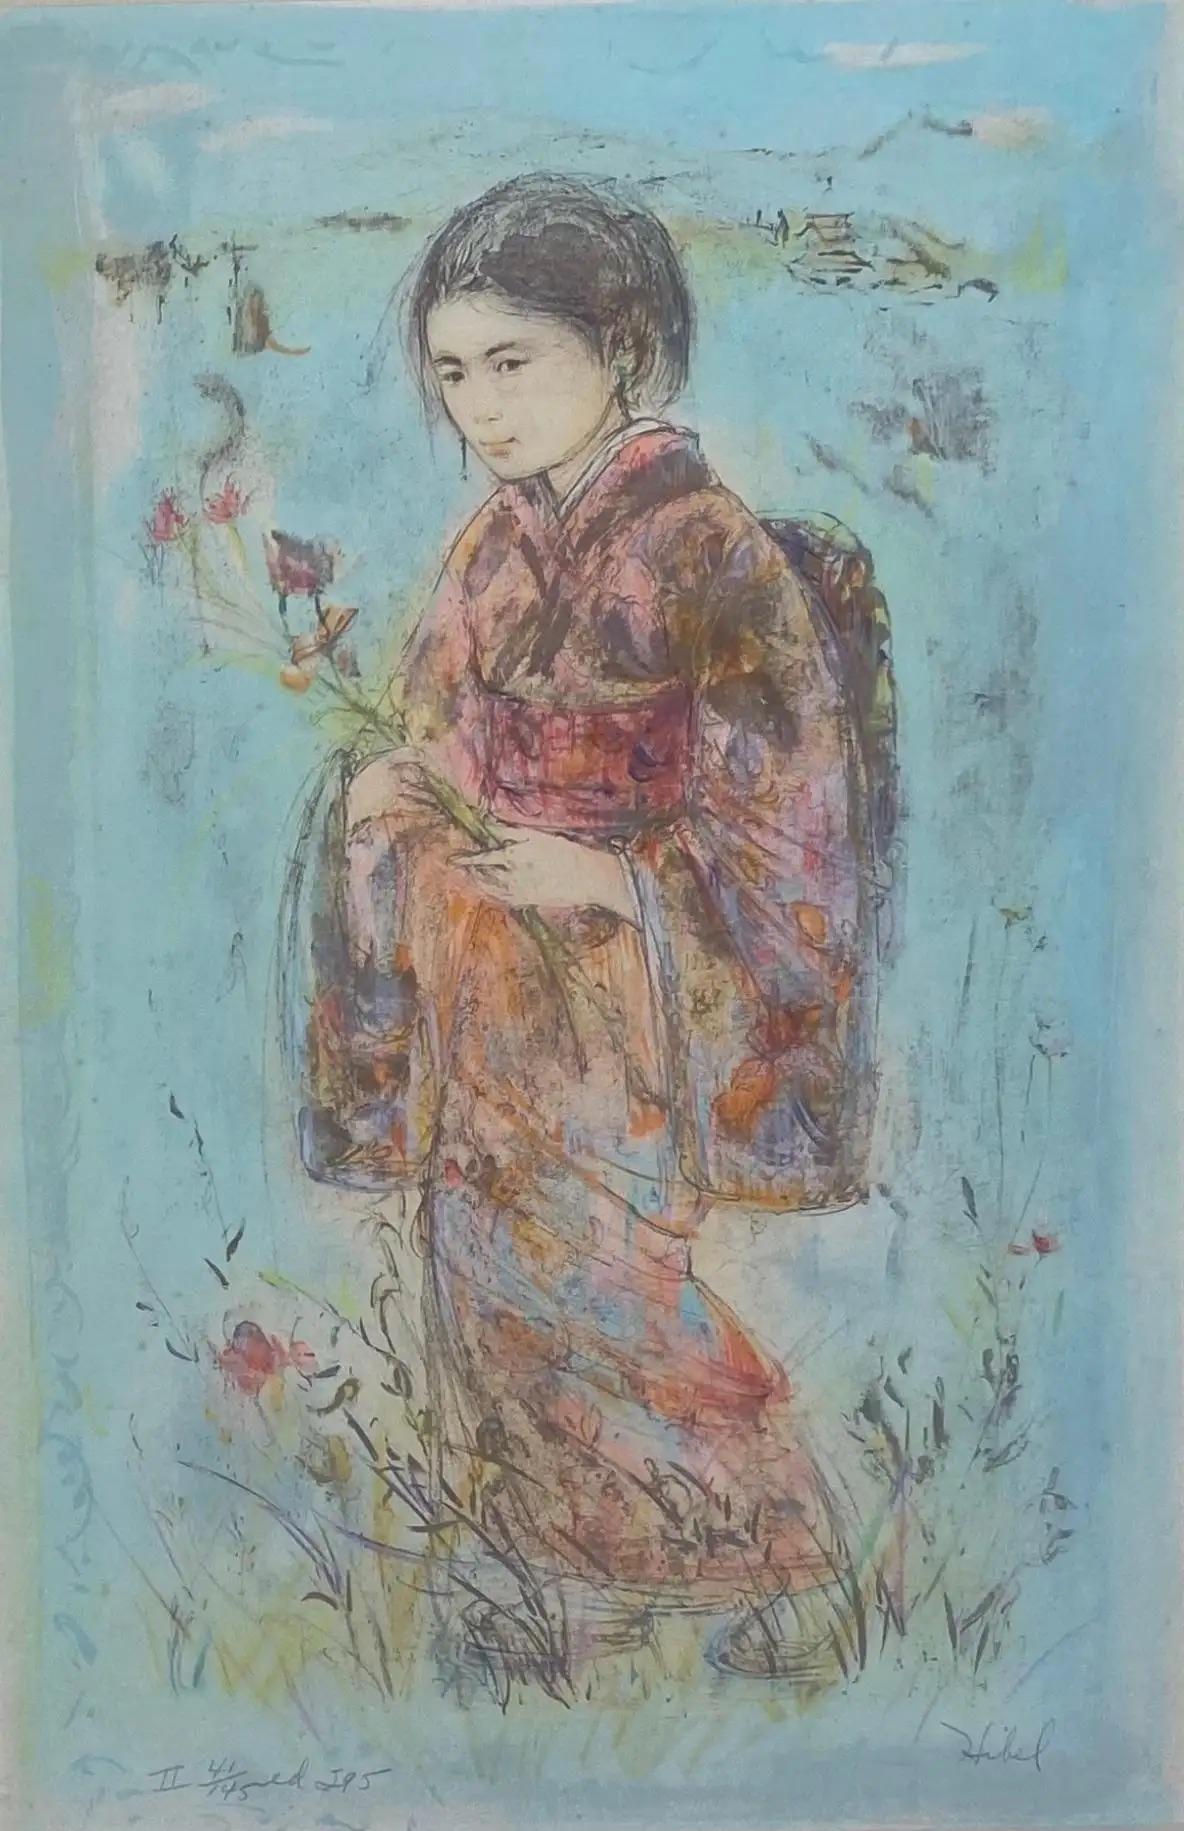 Ein wunderschönes dekoratives Kunstwerk von Edna Hibel, das ein junges Mädchen in einem traditionellen japanischen Kimono zeigt.
 
Edna Hibel: 1917-2015. Bedeutende amerikanische Künstlerin. Vor allem in Florida und Massachusetts verbreitet. Es gibt